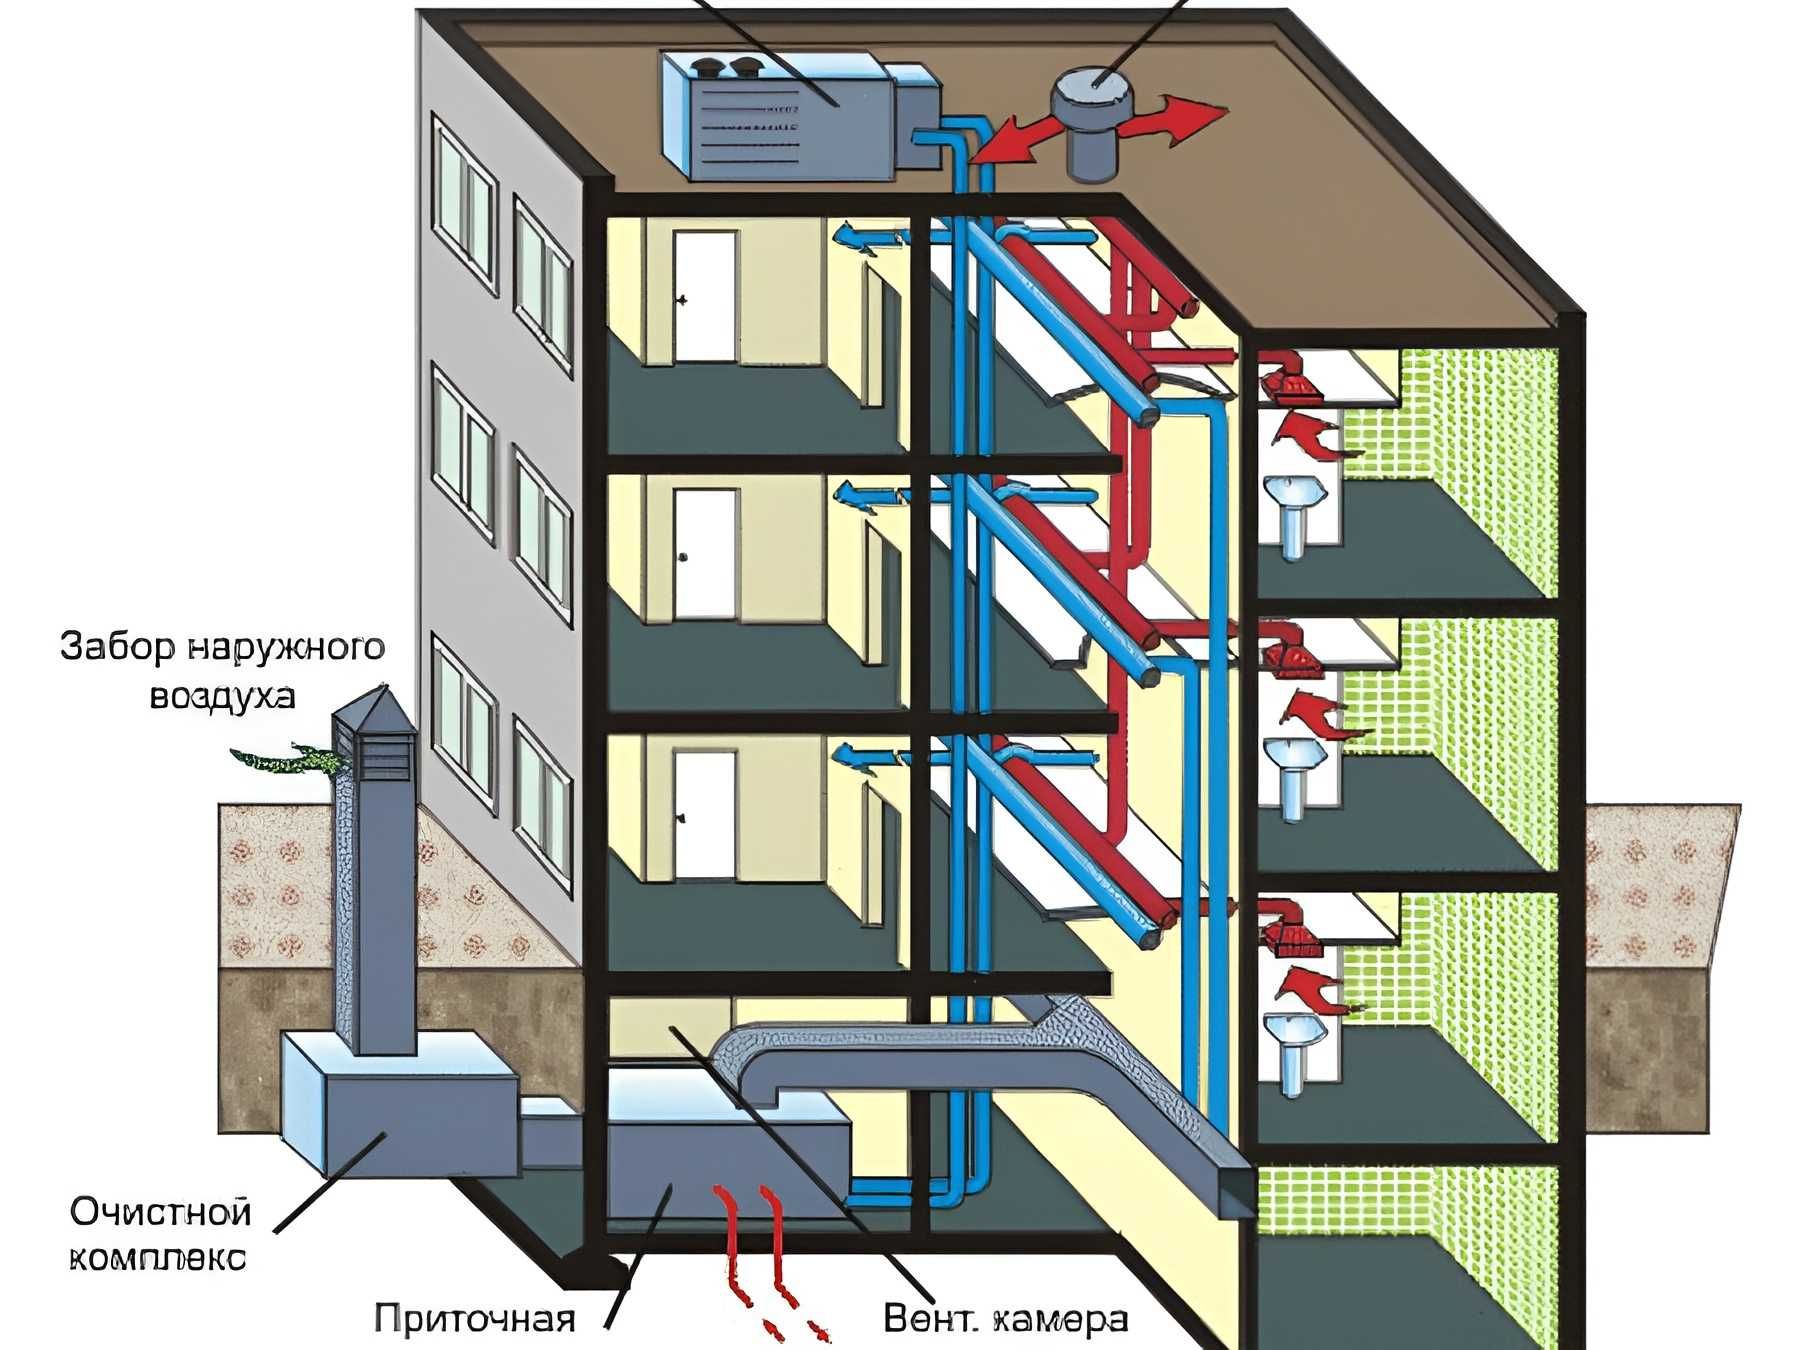 Забор наружного воздуха. Вытяжная приточная приточно-вытяжная система вентиляции схема. Приточно-вытяжная вентиляция в многоквартирном доме. Система приточно-вытяжной вентиляции в многоквартирном доме. Система вентиляции в многоквартирном панельном доме схема.